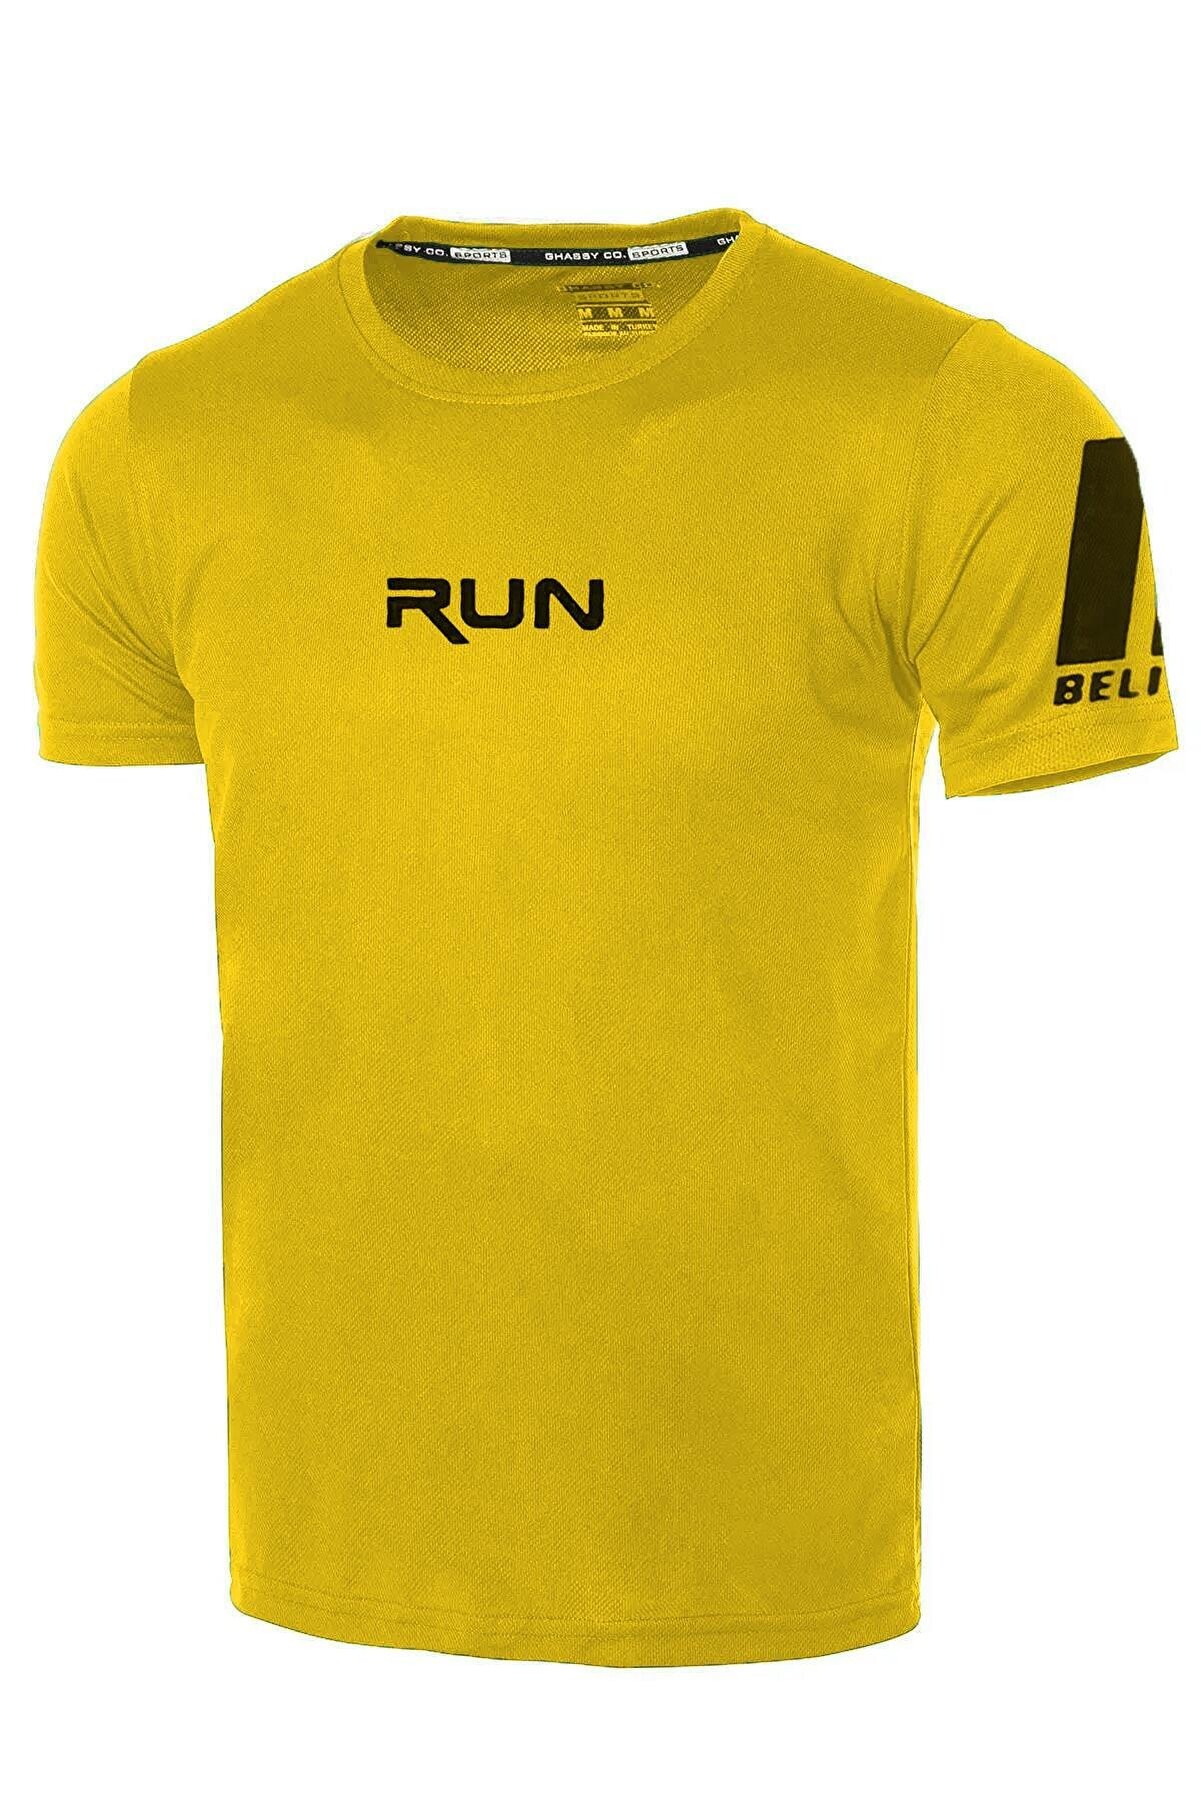 Ghassy Co Ghassy Co. Erkek Nem Emici Hızlı Kuruma Performans Running Spor T-shirt - Sarı